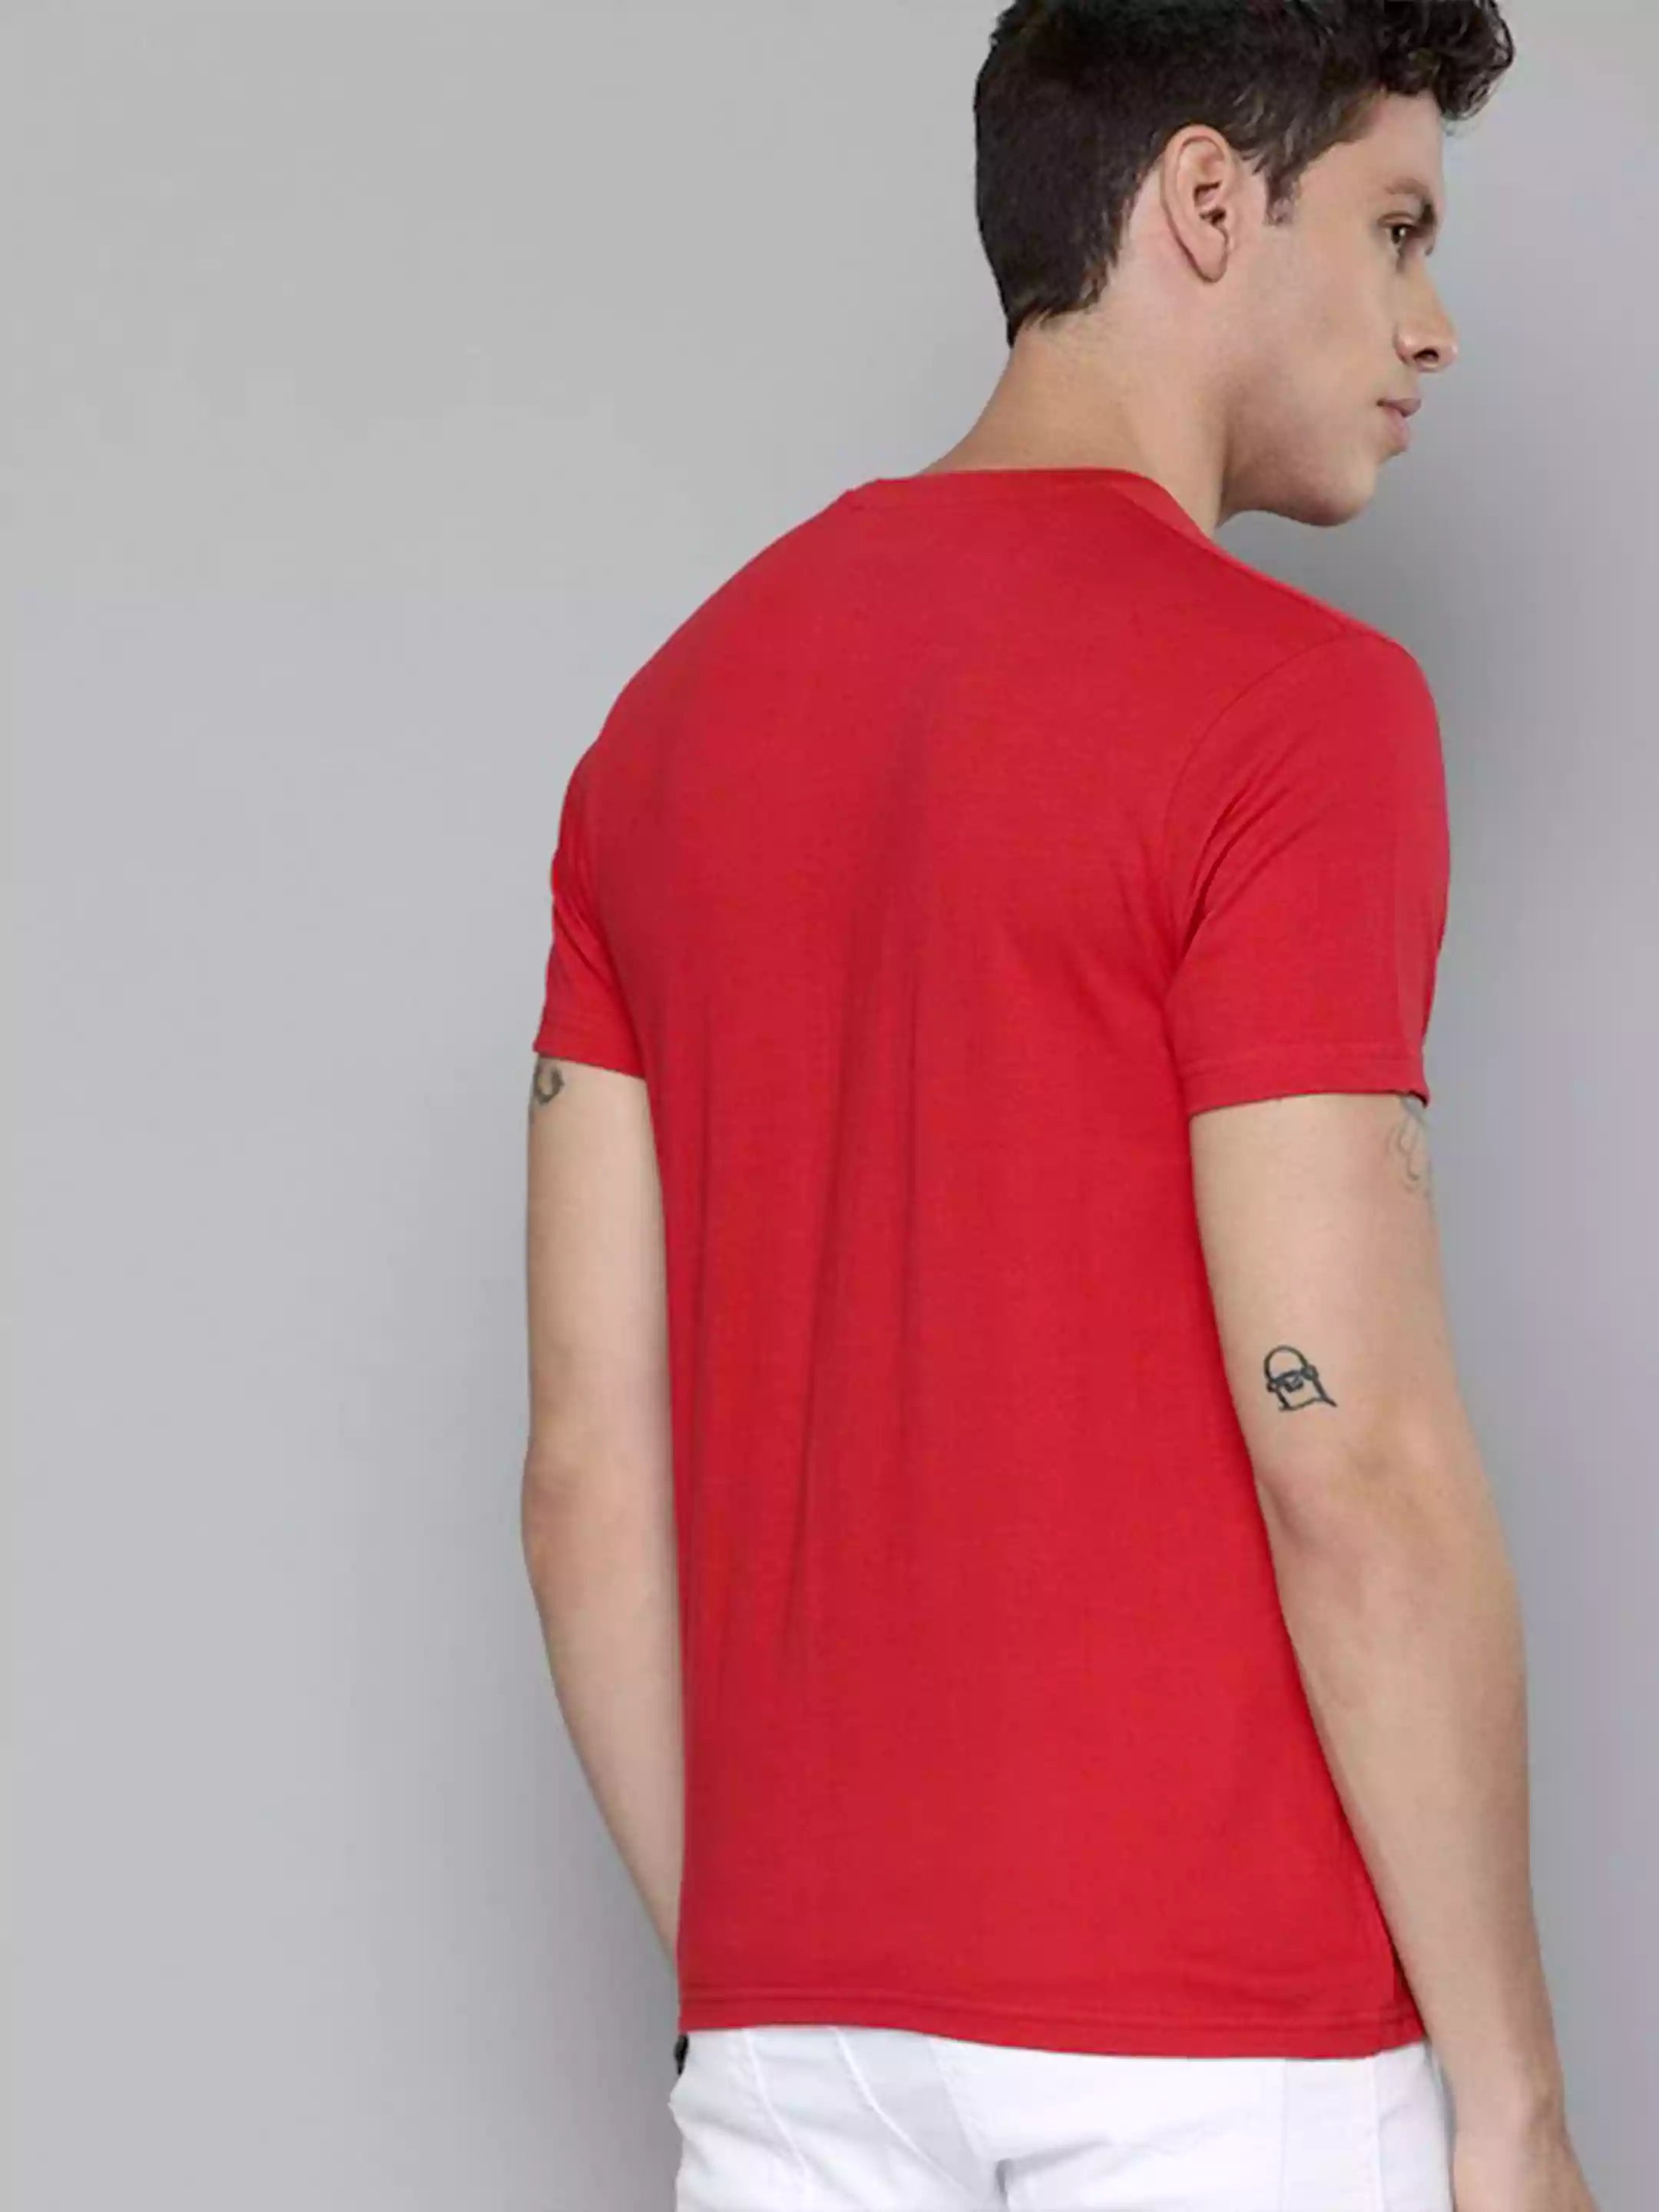 Sukhiaatma Original Unisex Red T-shirt